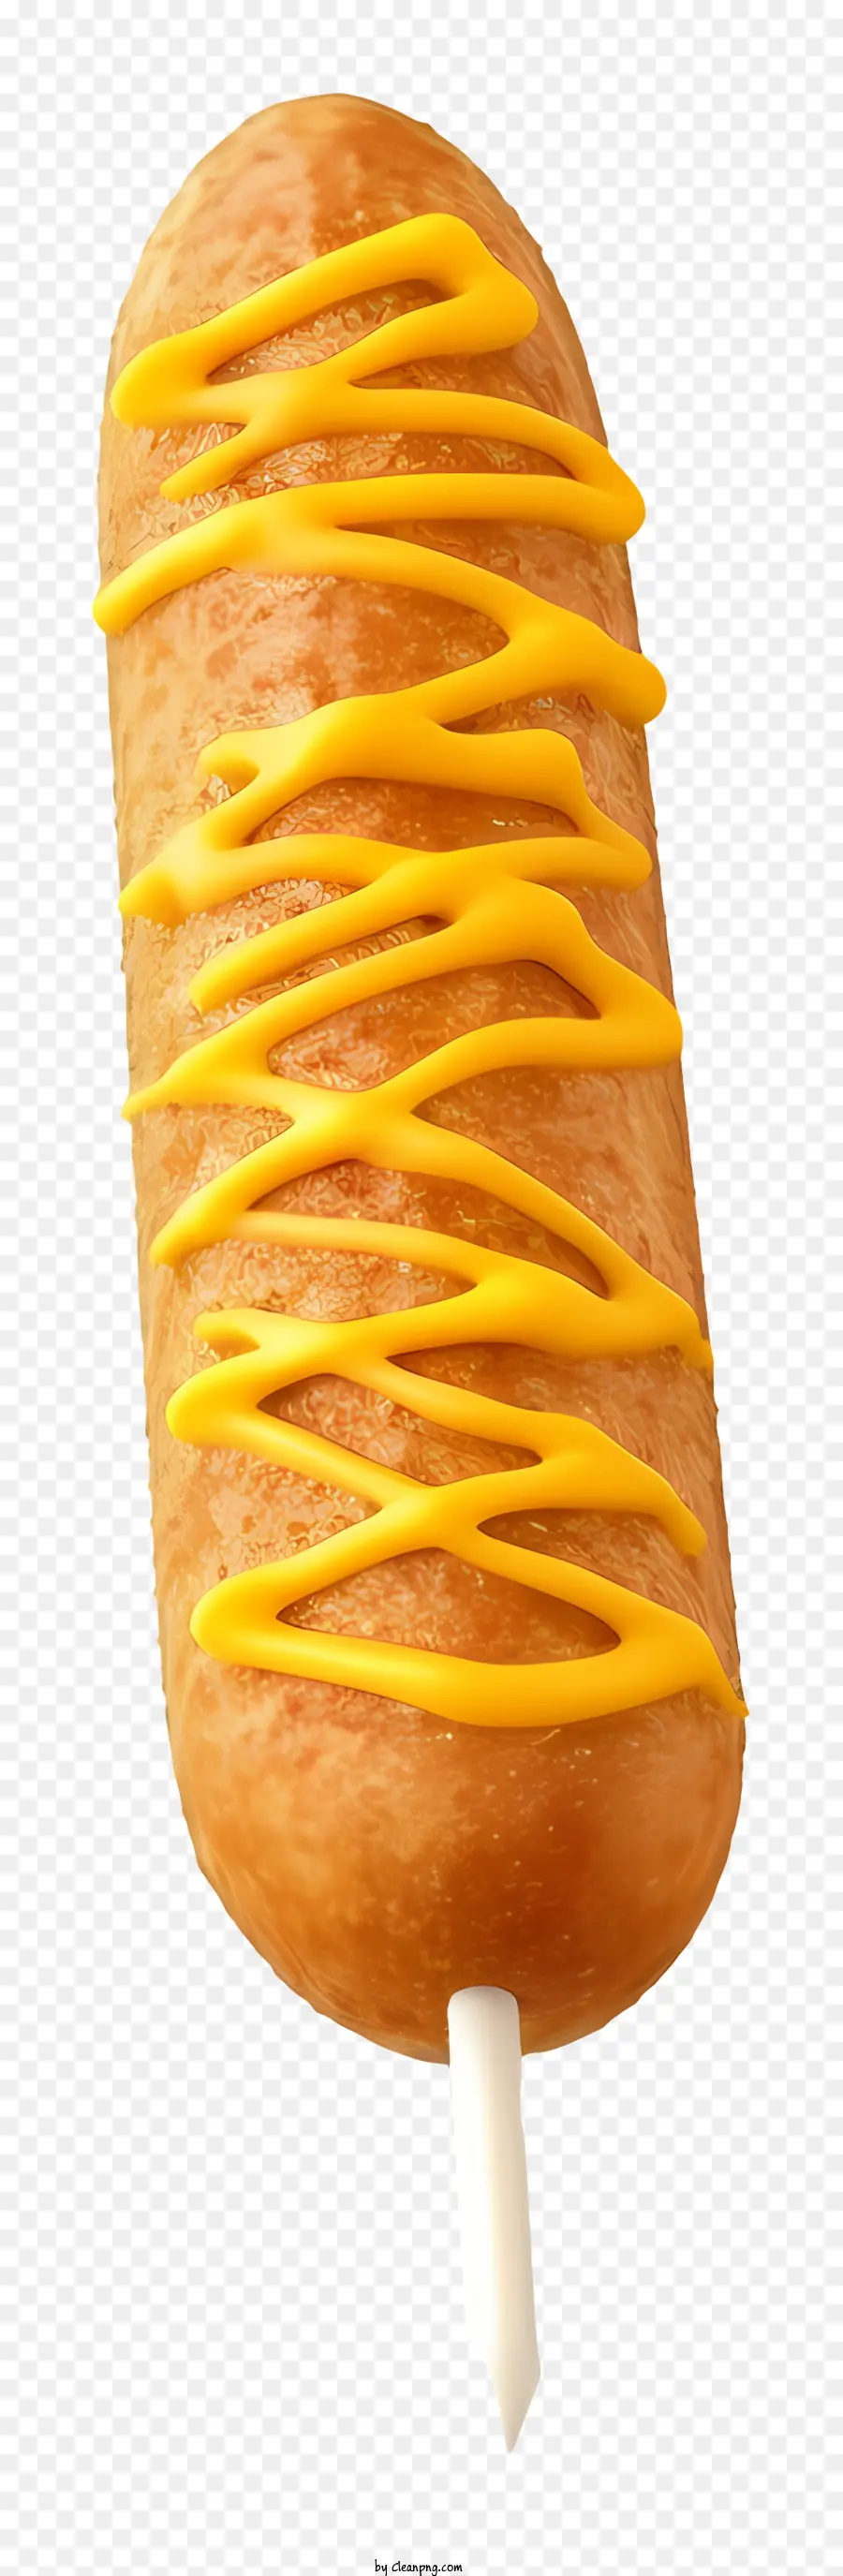 Bánh lát men màu vàng Dripping Stick - Bánh ẩm trên gậy với men màu vàng